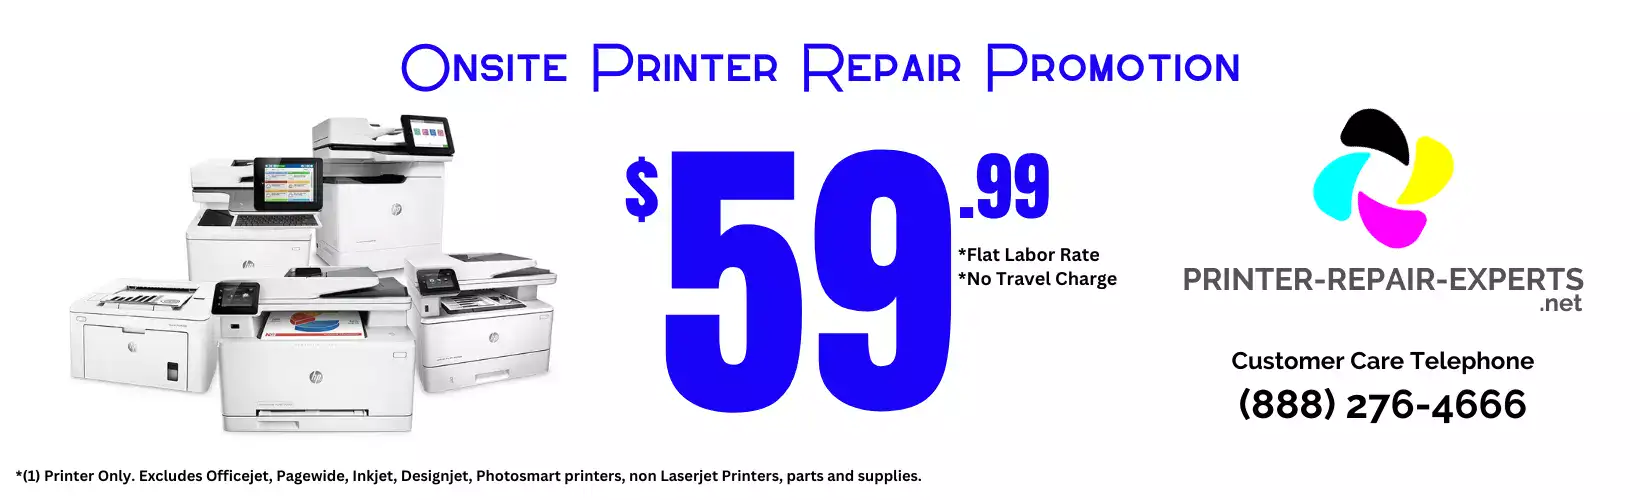 (c) Printer-repair-experts.net